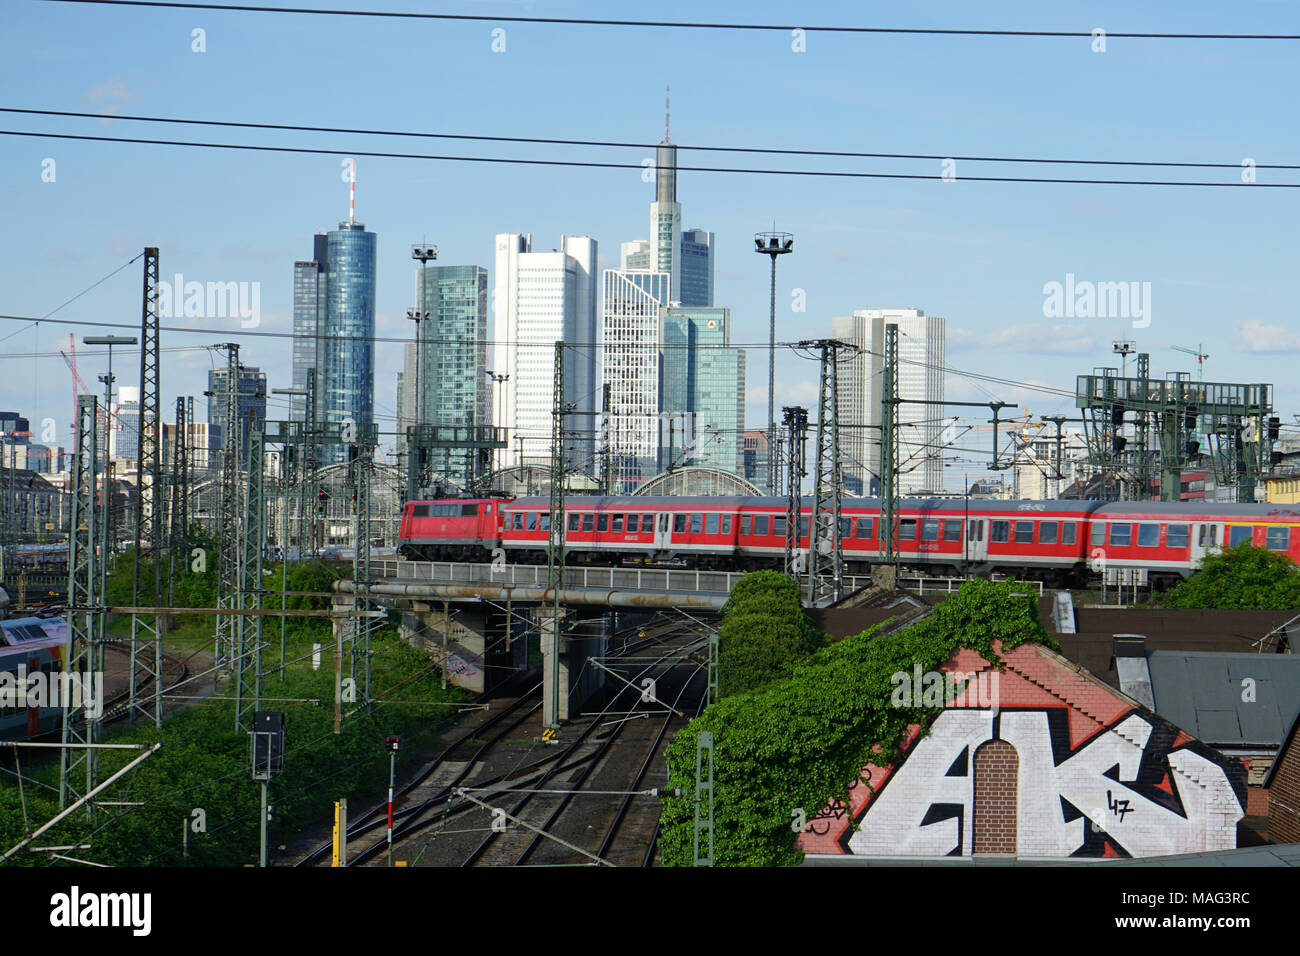 Zug fährt über eine Brücke, Gleise zum Frankfurter Hauptbahnhof, Skyline, Frankfurt, Deutschland, Europa Stock Photo